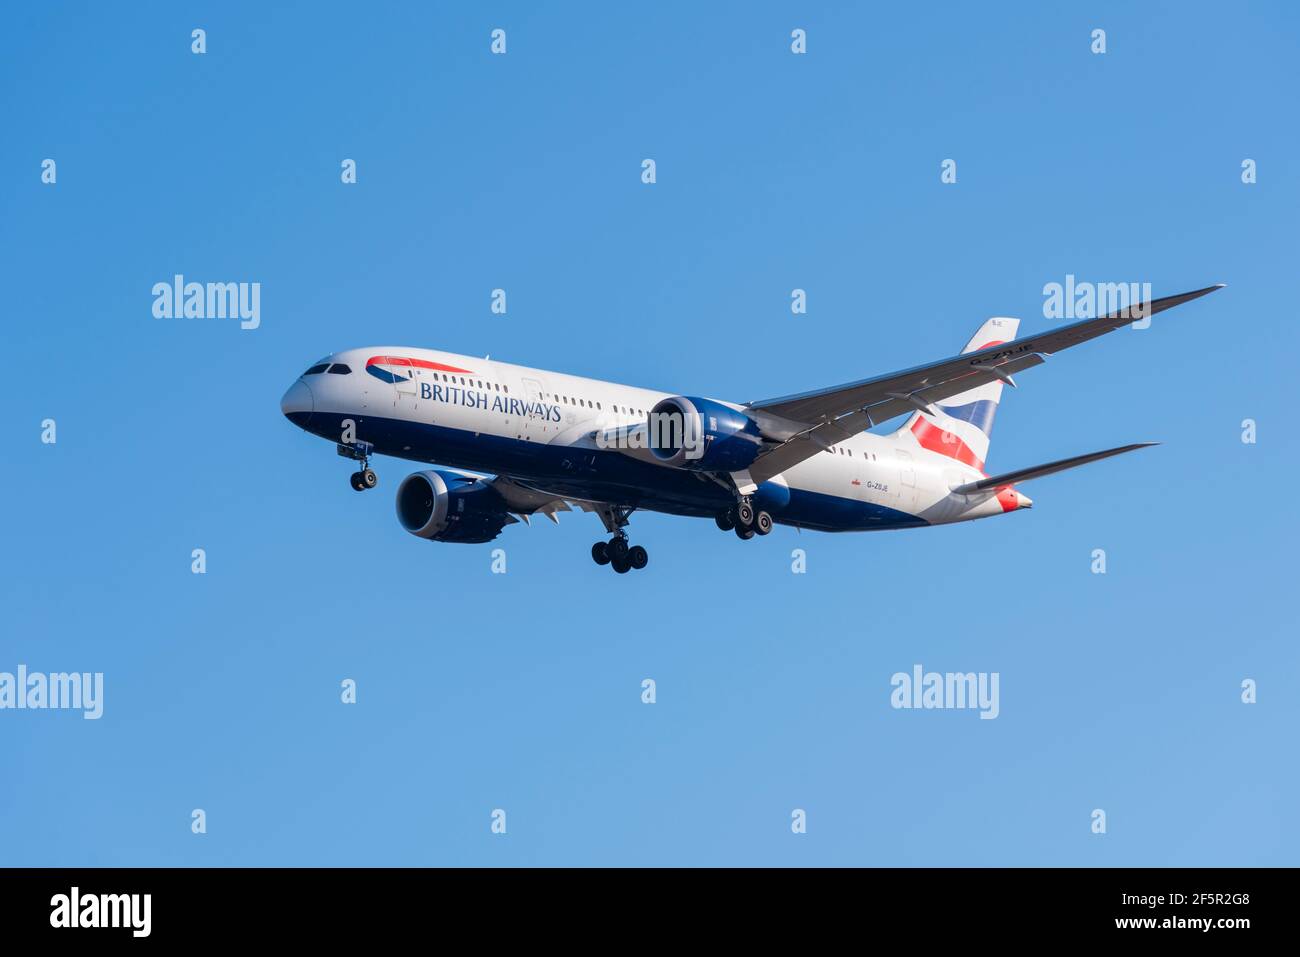 British Airways Boeing 787 Dreamliner Jet Airliner Flugzeug G-ZBJE im Finale auf dem London Heathrow Airport, Großbritannien, in blauem Himmel landen Stockfoto